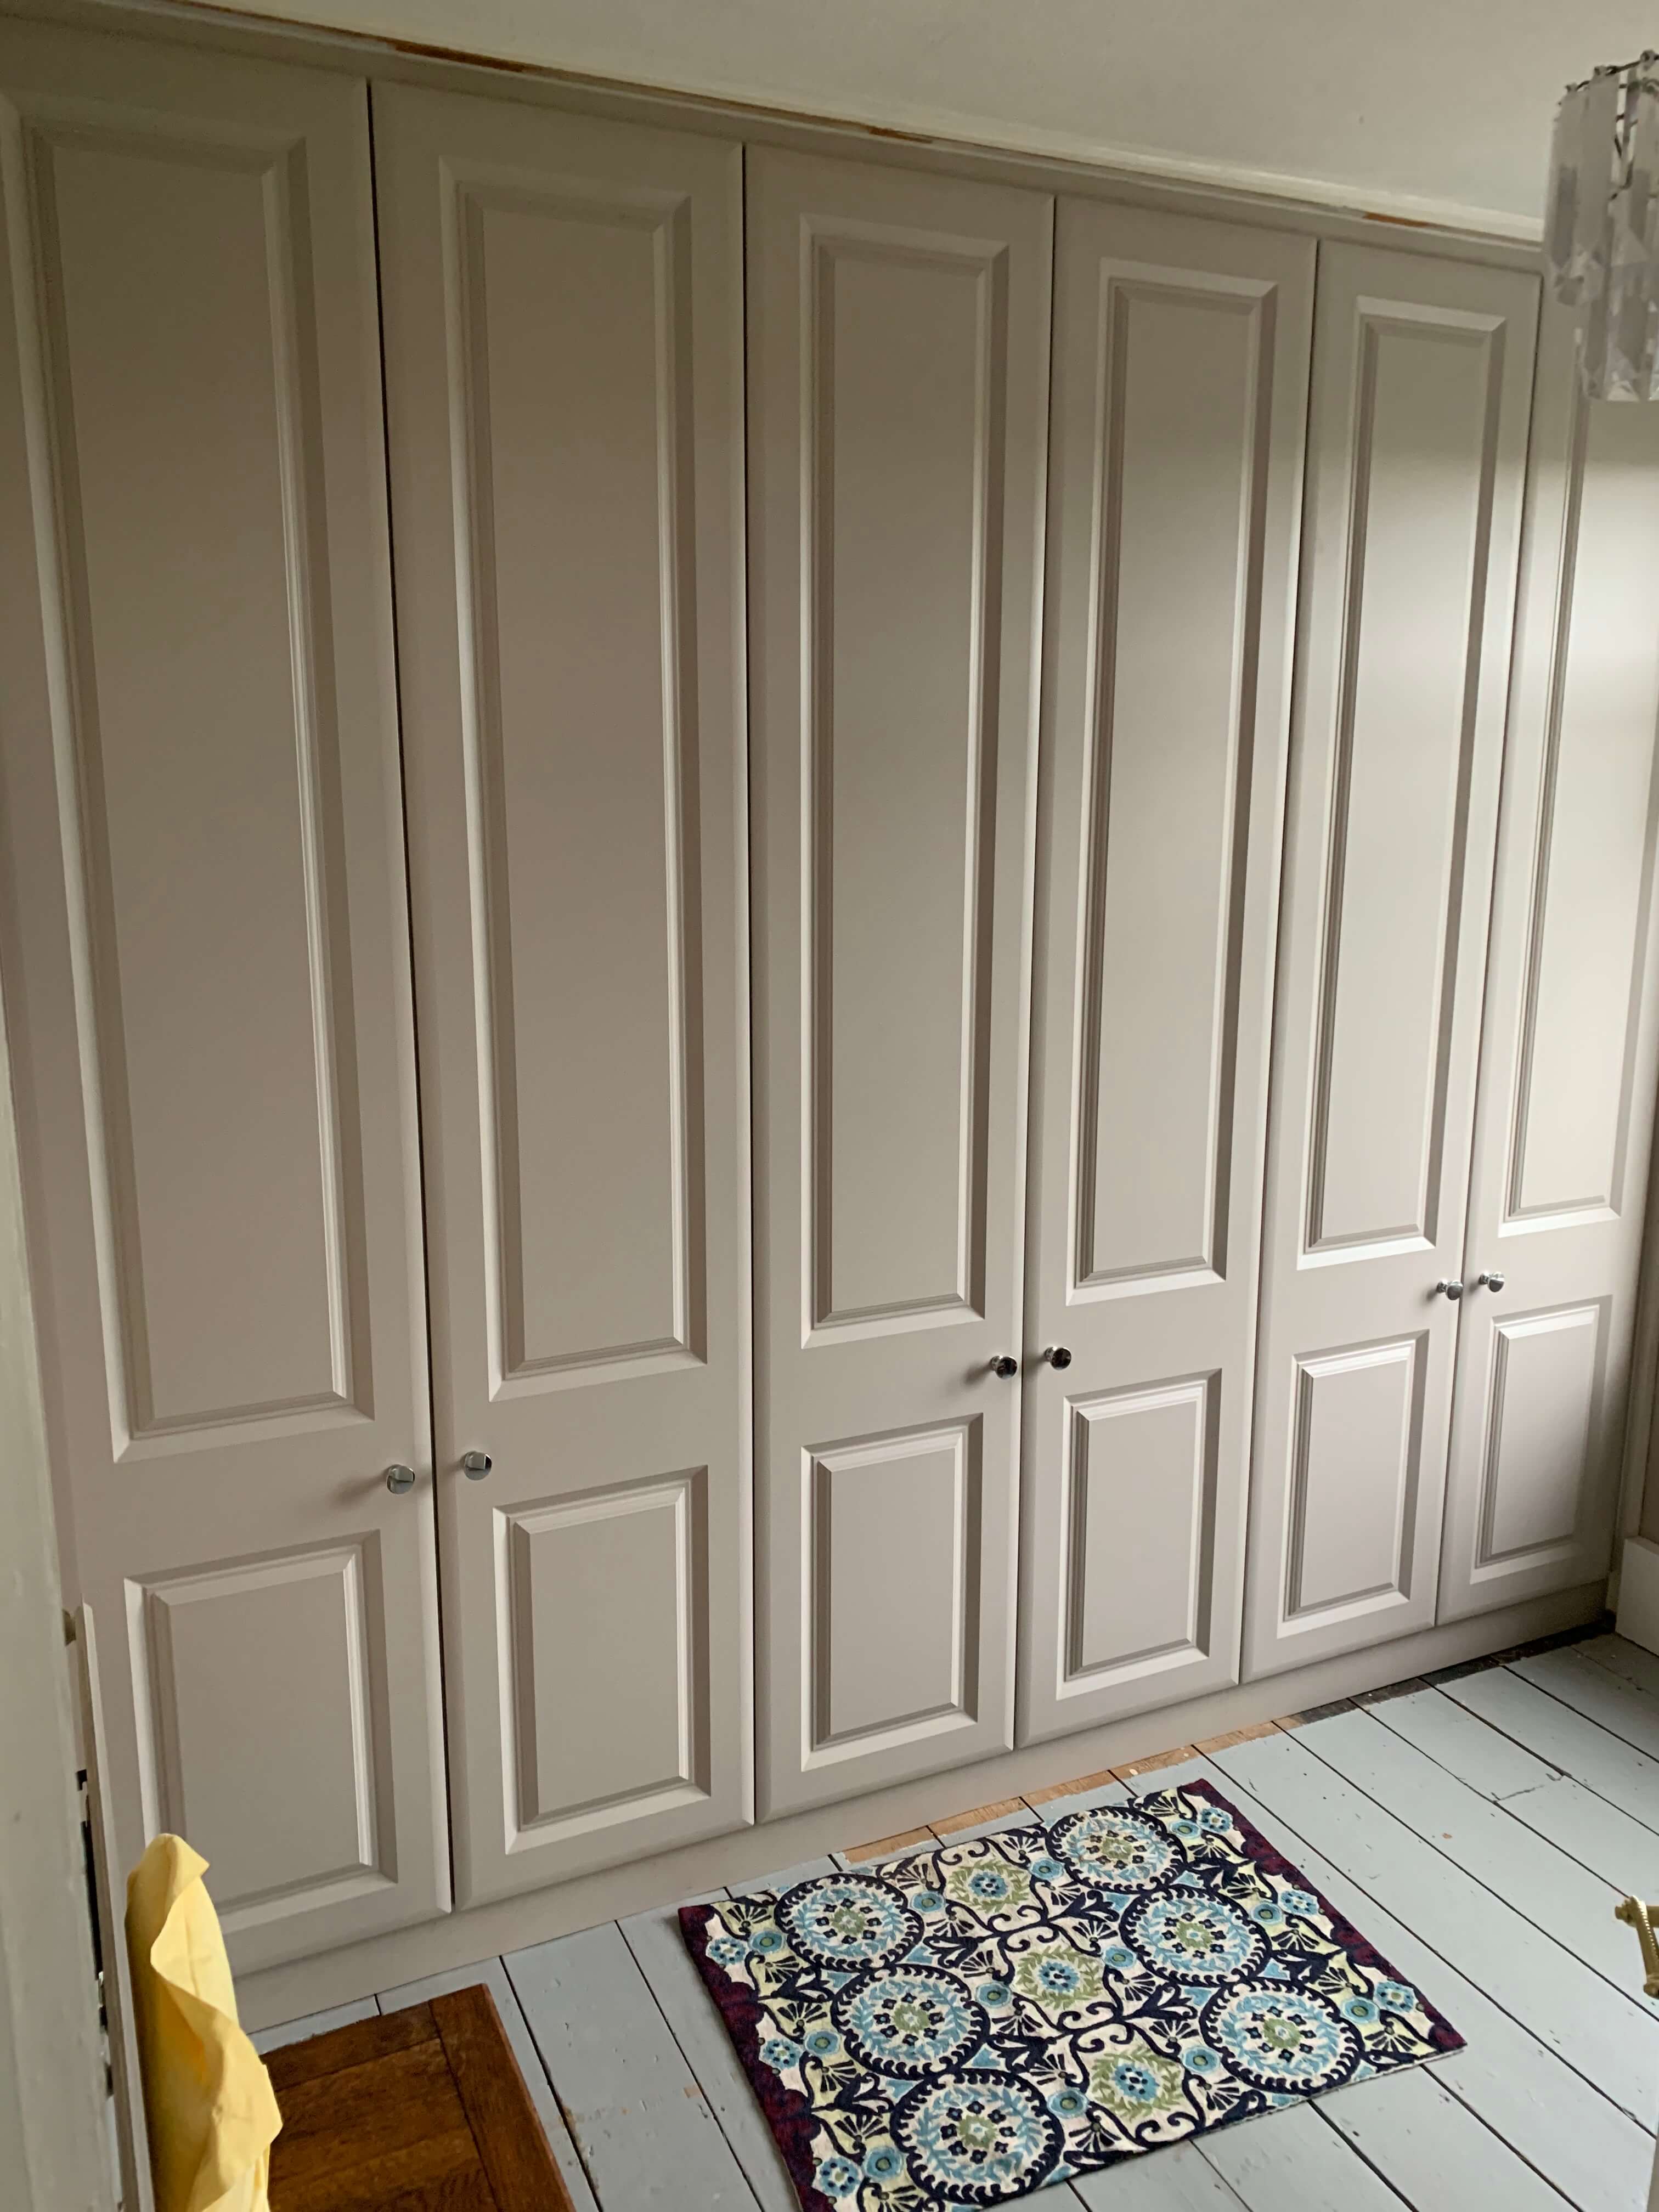 Traditional panelled bedroom door